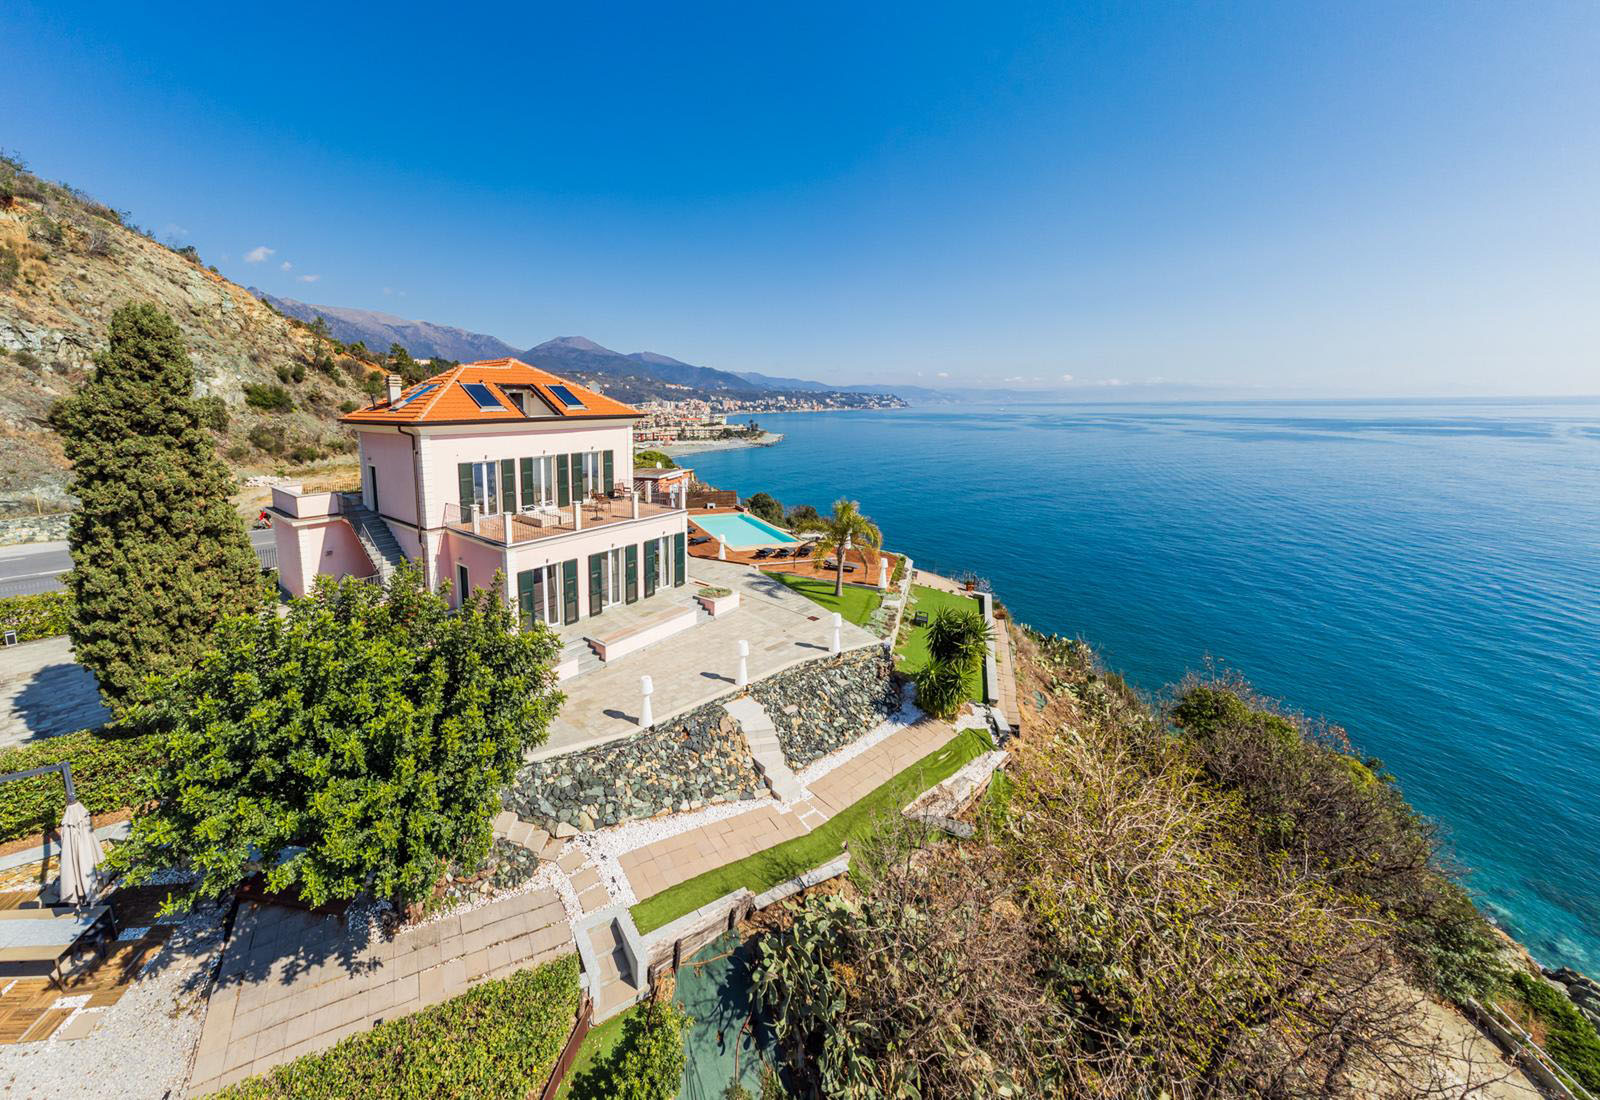 Villa Marisa - Mediterranean sea and italian lyfestyle